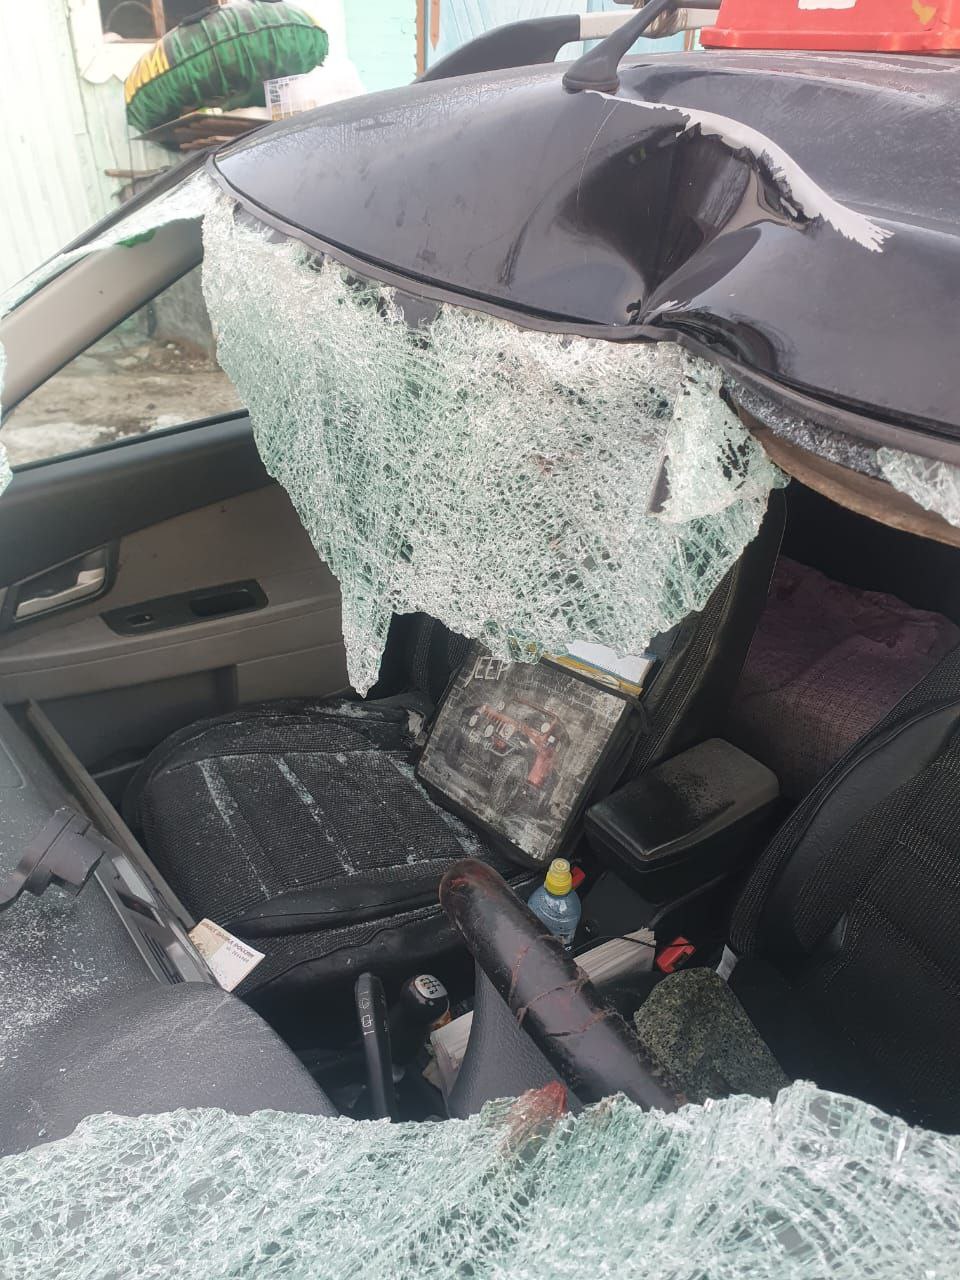 Пожилой водитель в Омской области бросил сбитого им пешехода и сбежал #Омск #Общество #Сегодня